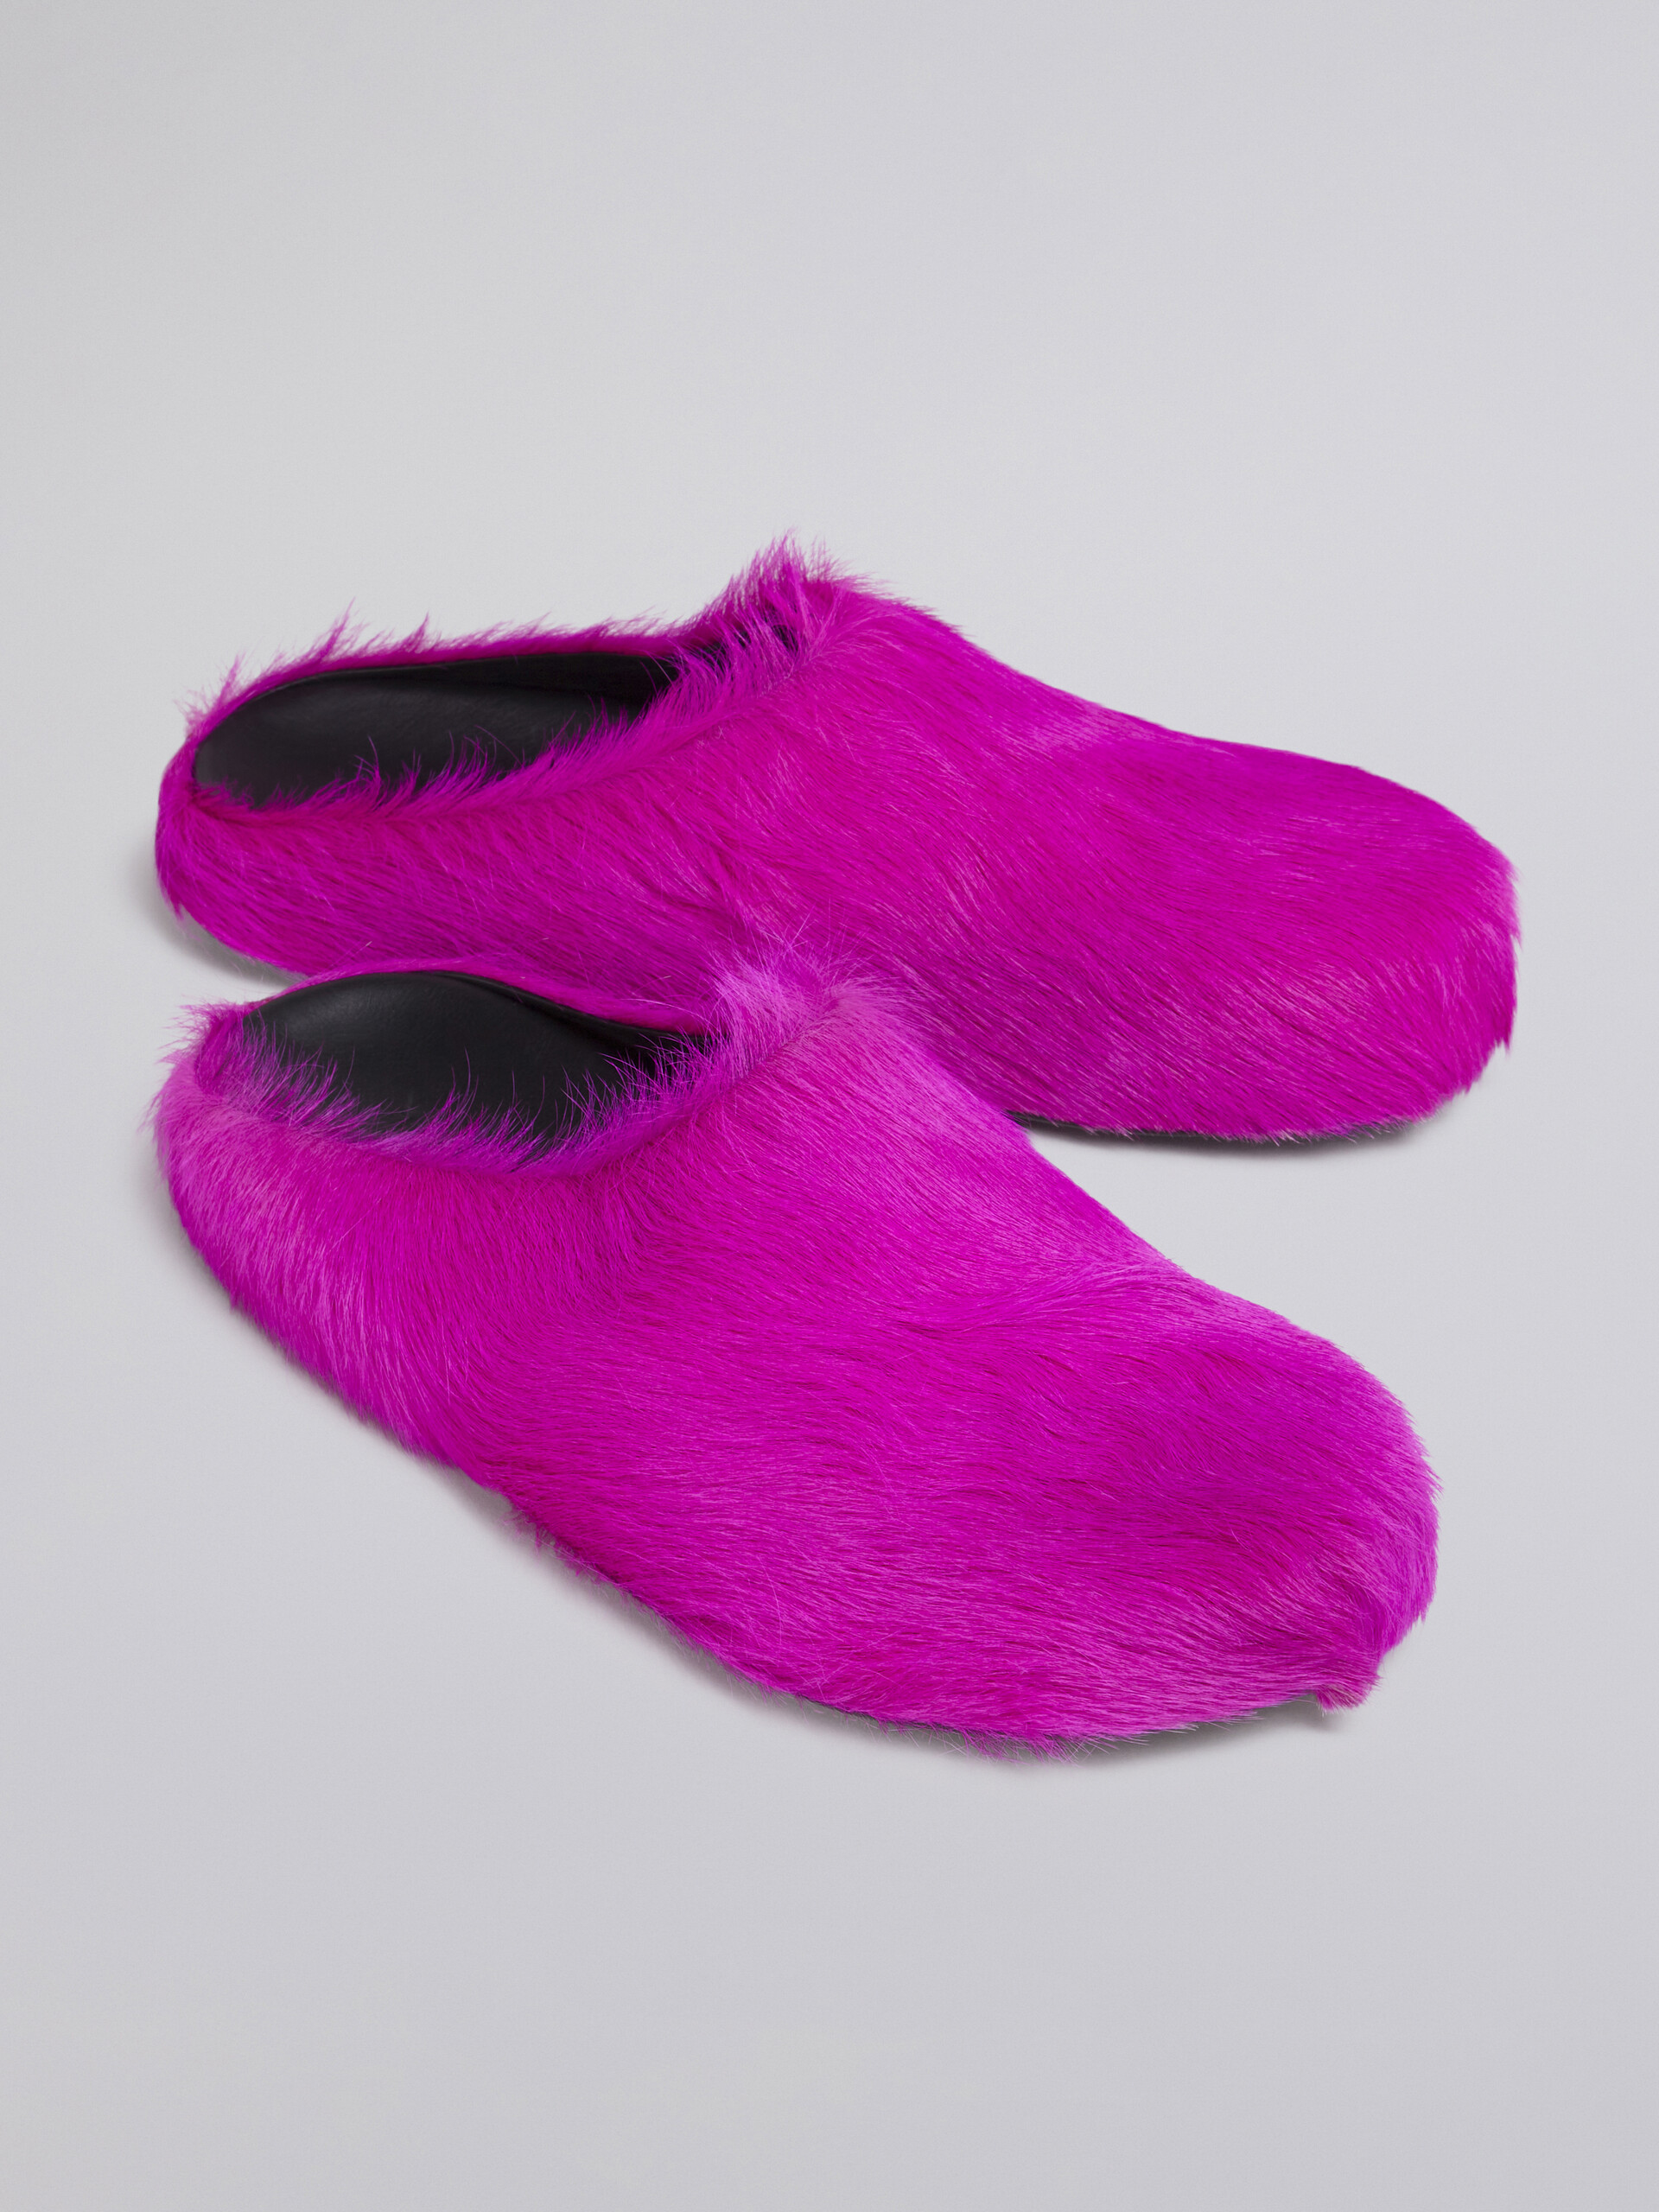 Pinkfarbene Fußbett-Sabots aus Kalbsfell - Holzschuhe - Image 5